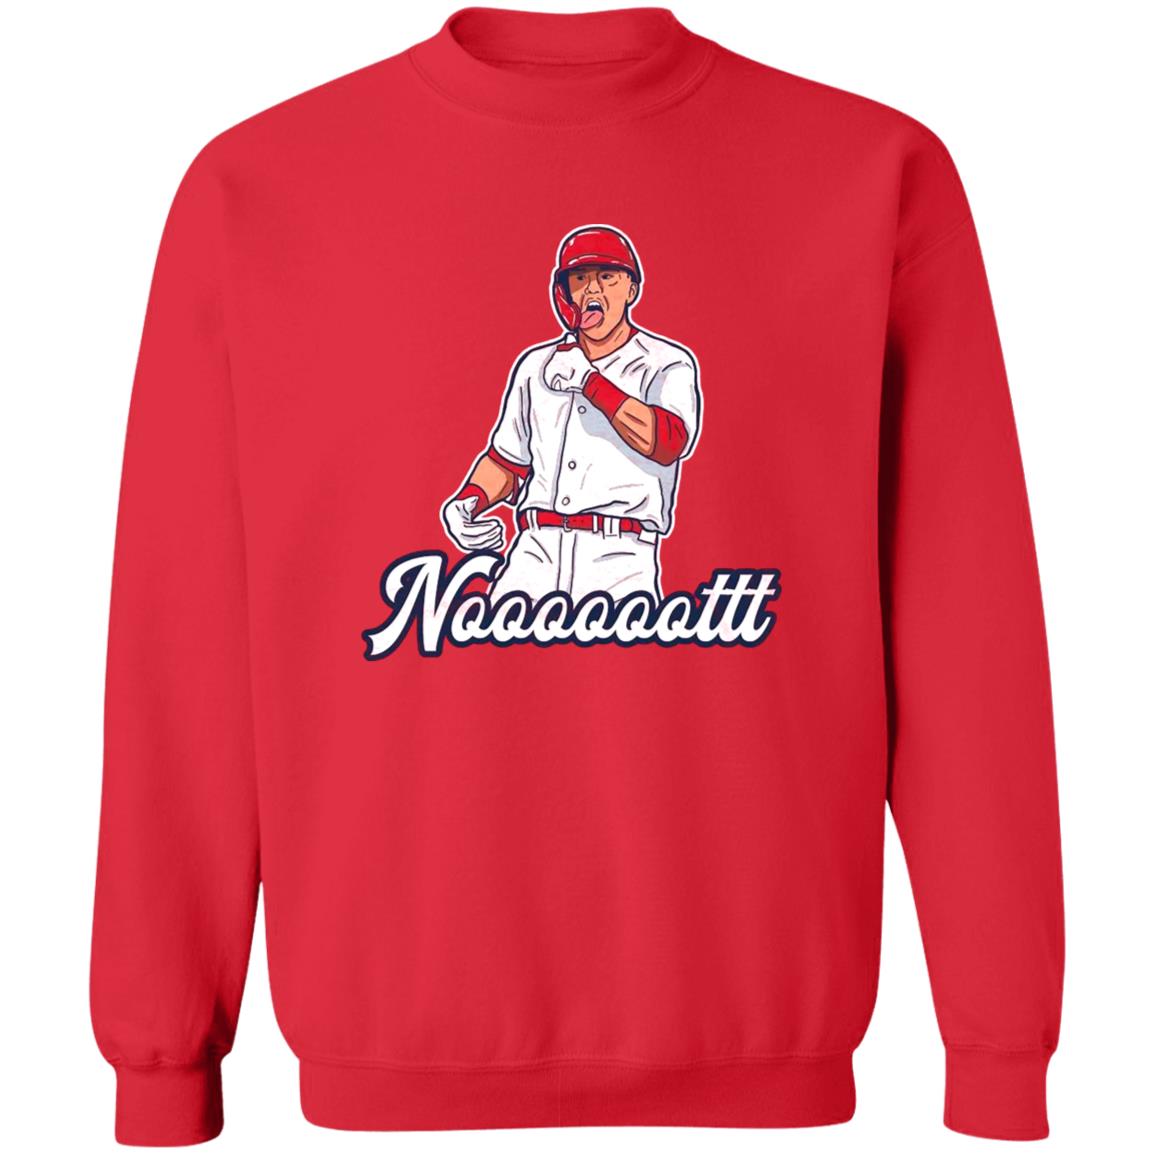 NOOT SHIRT Lars Nootbaar, St. Louis Cardinals - Ellie Shirt